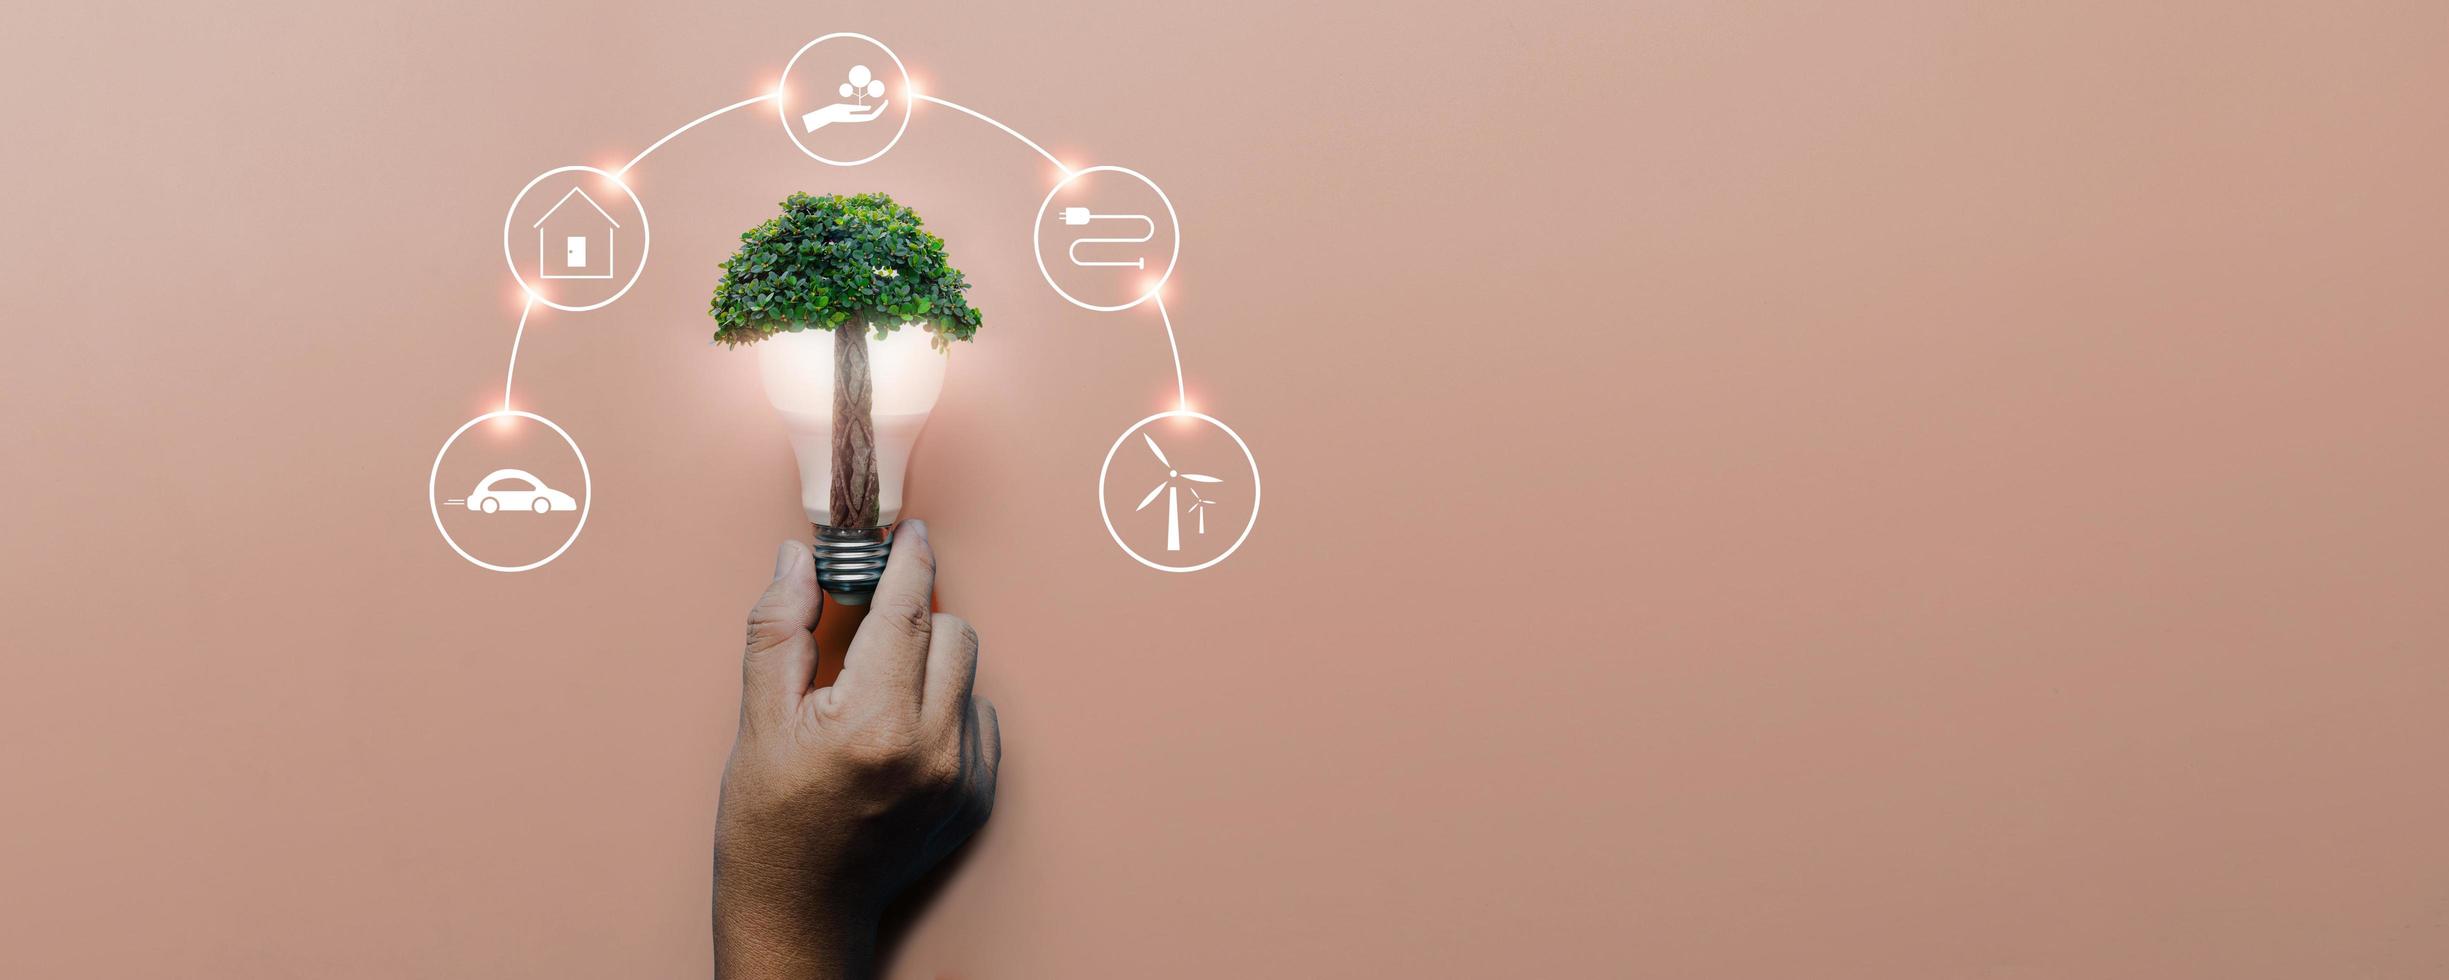 mano que sostiene la bombilla con gran árbol sobre fondo rosa con iconos de fuentes de energía para energías renovables, células solares, desarrollo sostenible. concepto de ecología y medio ambiente. foto